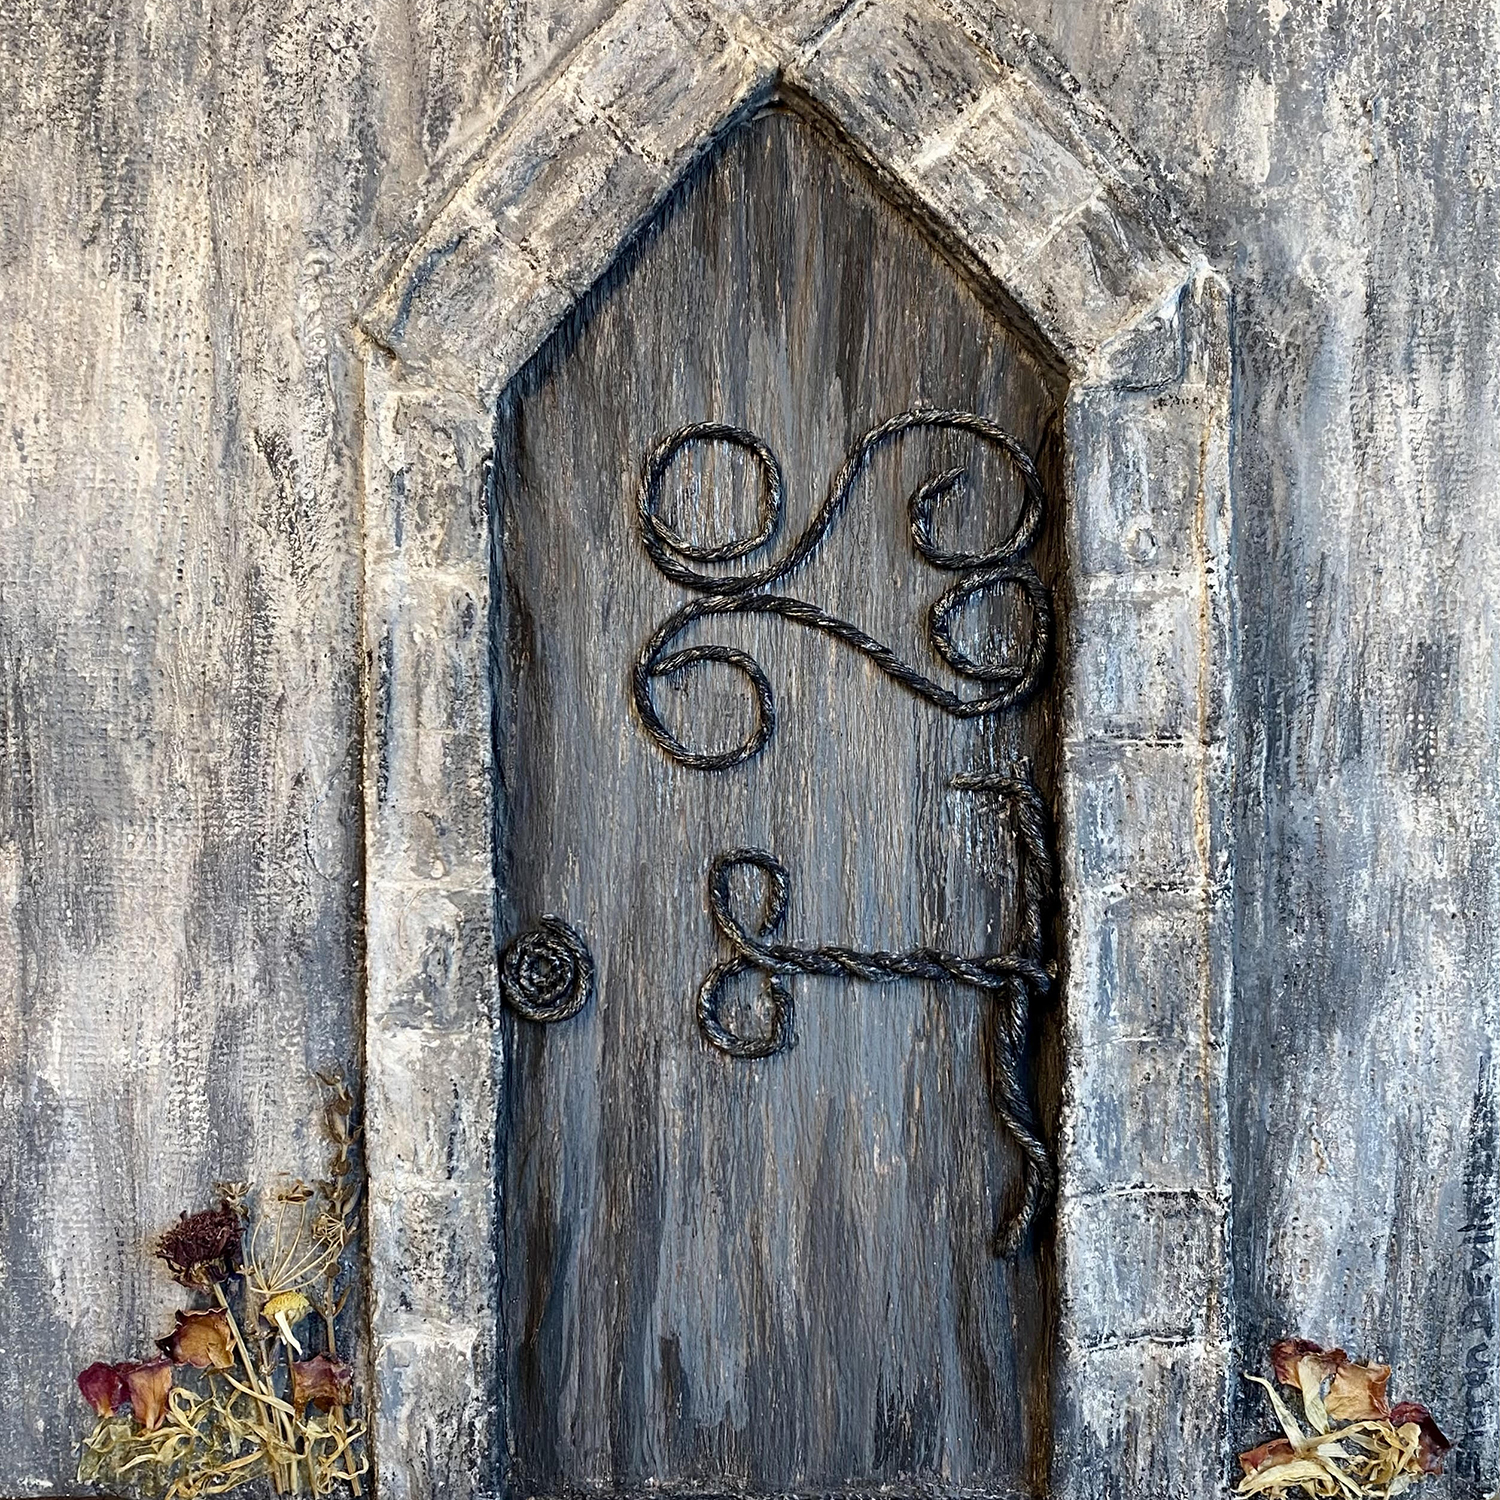 Threshold by Sharon Devlin